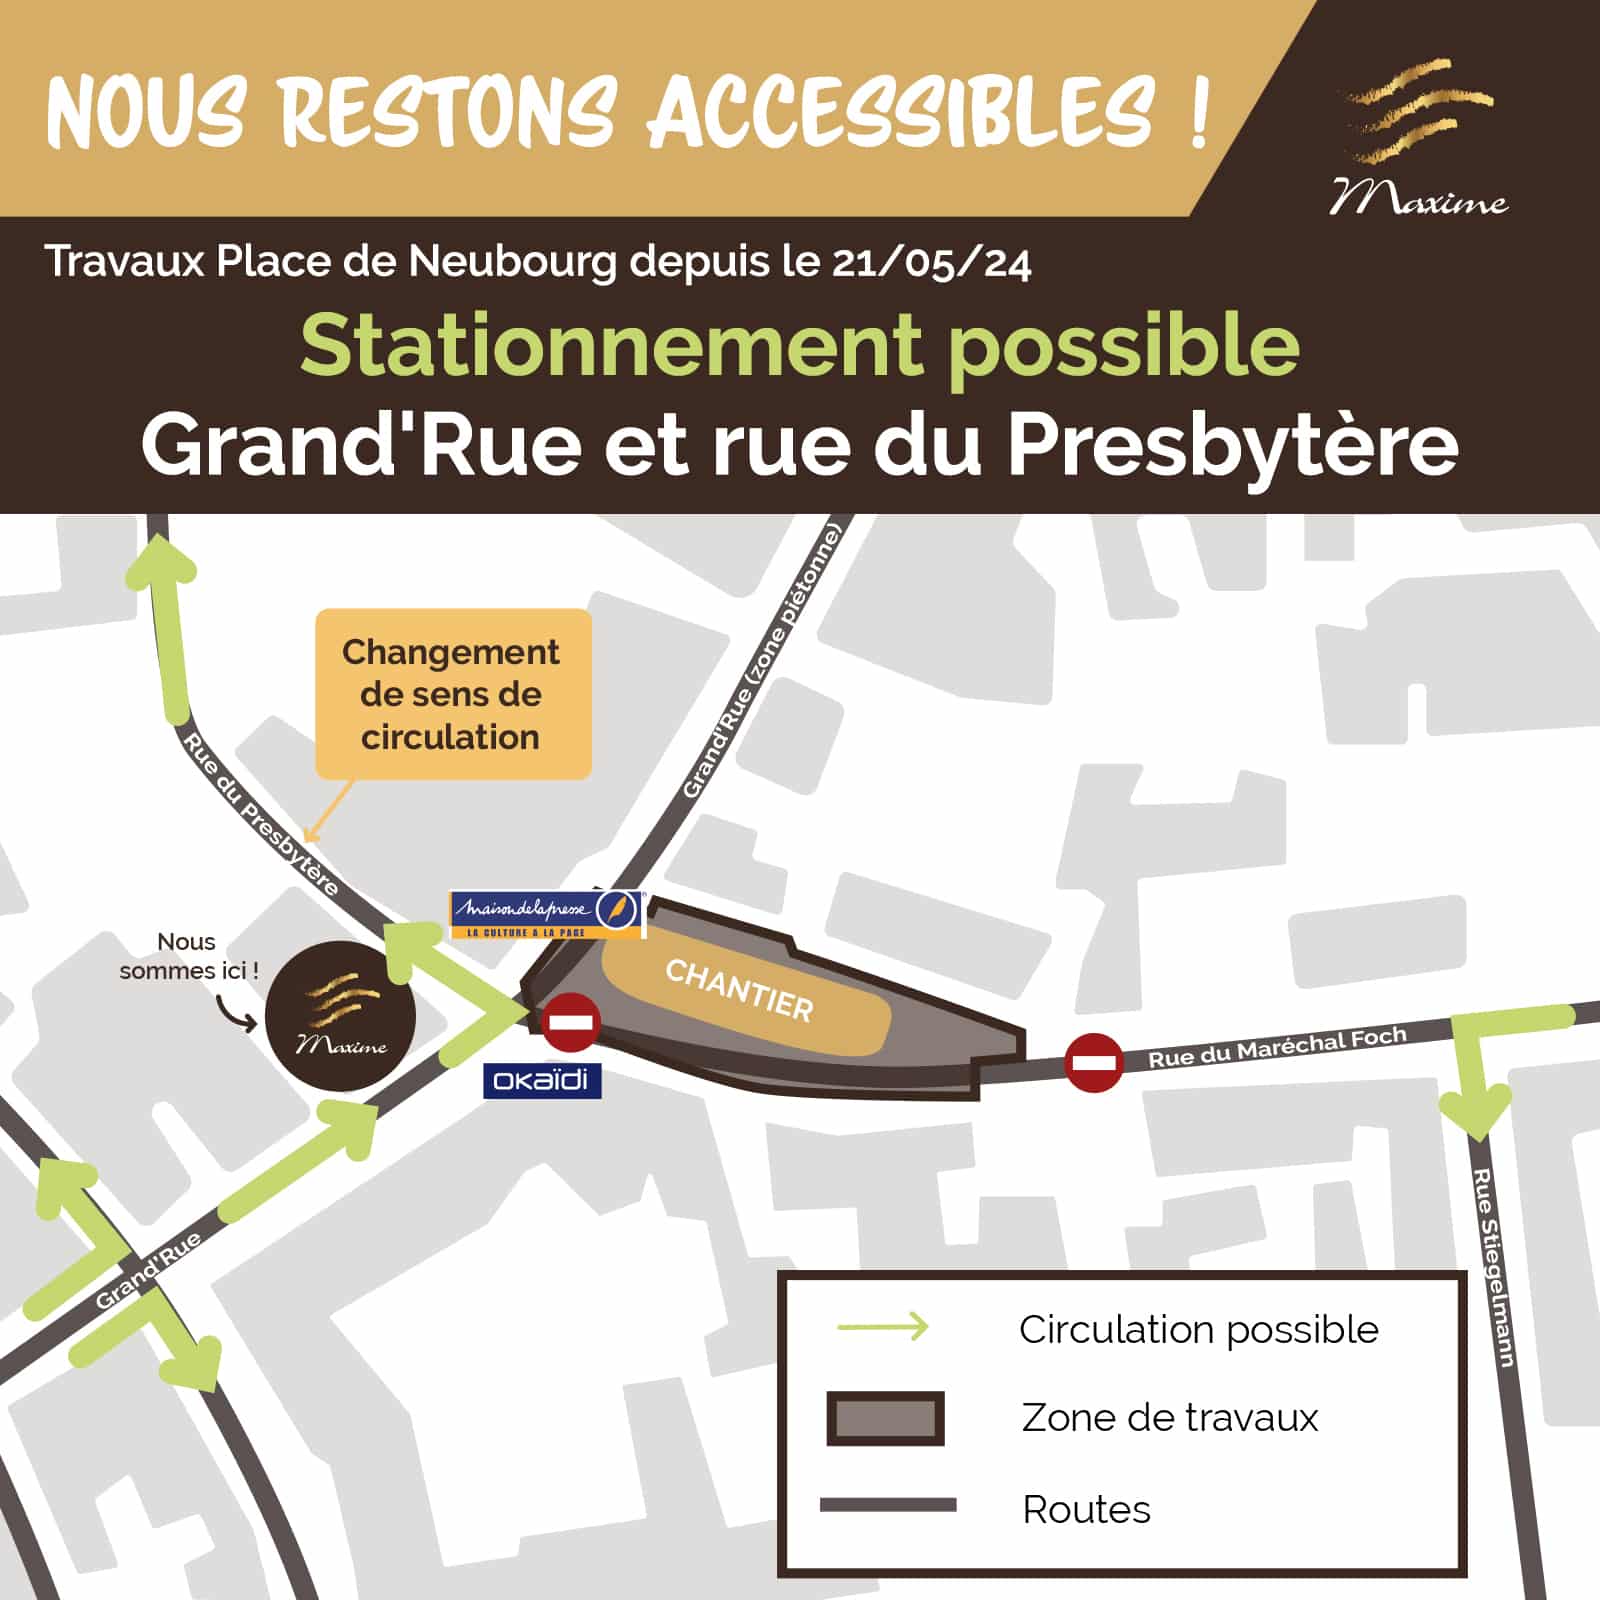 Nous restons accessibles ! Travaux Place de Neubourg depuis le 21/05/24 Stationnement possible Grand'Rue et rue du Presbytère